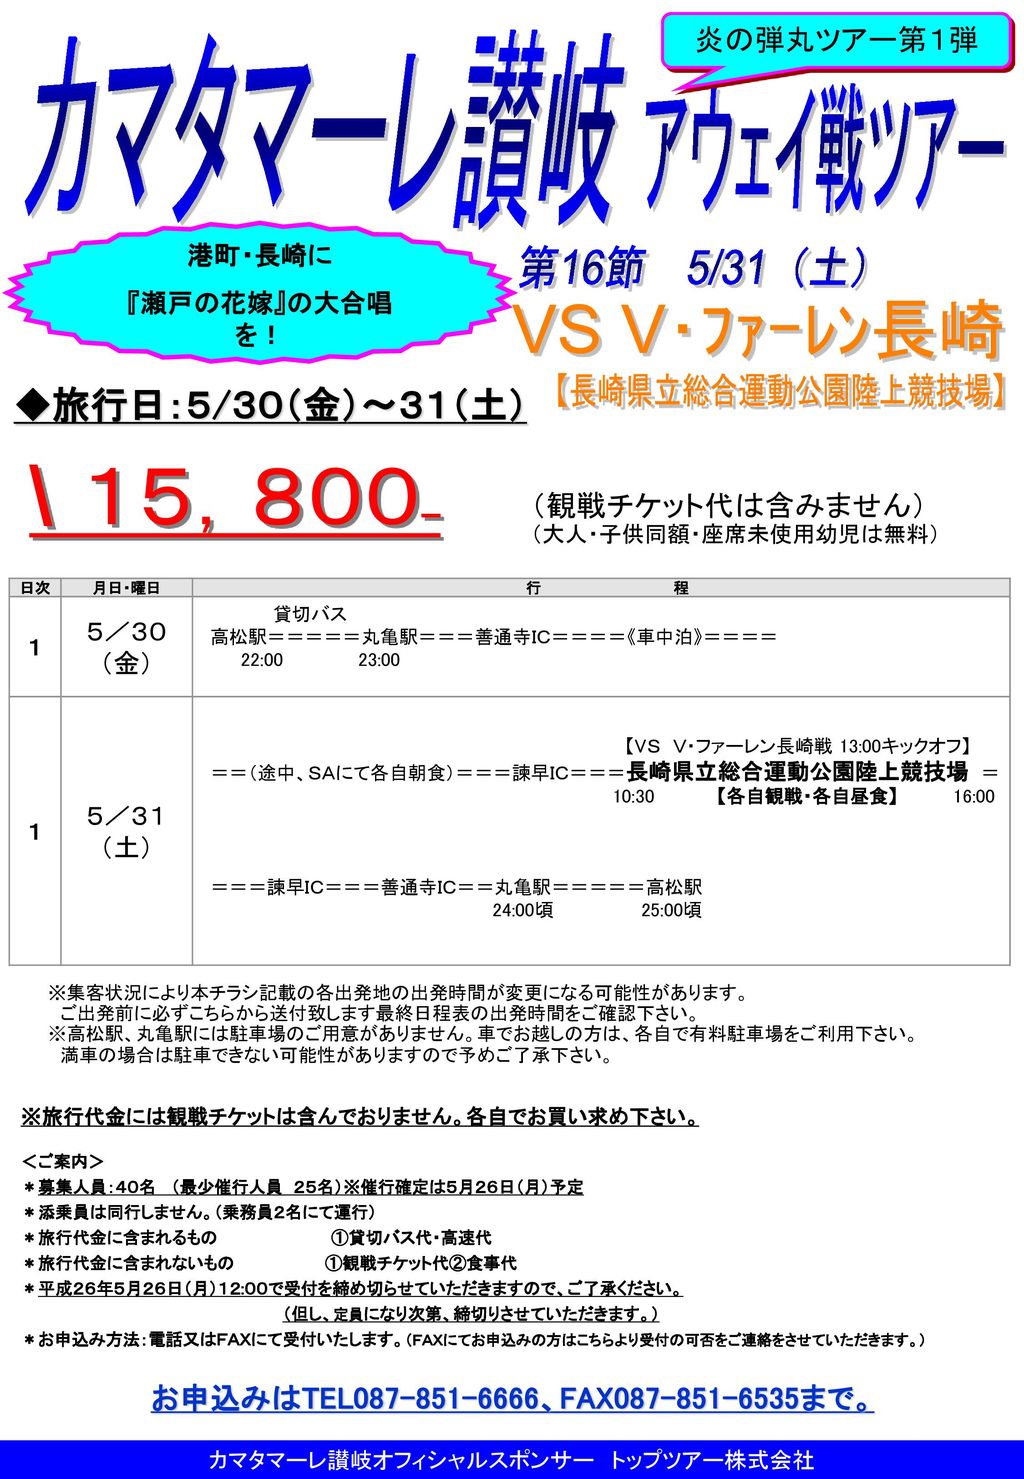 カマタマーレ讃岐オフィシャルスポンサー トップツアー株式会社 Ppt Download